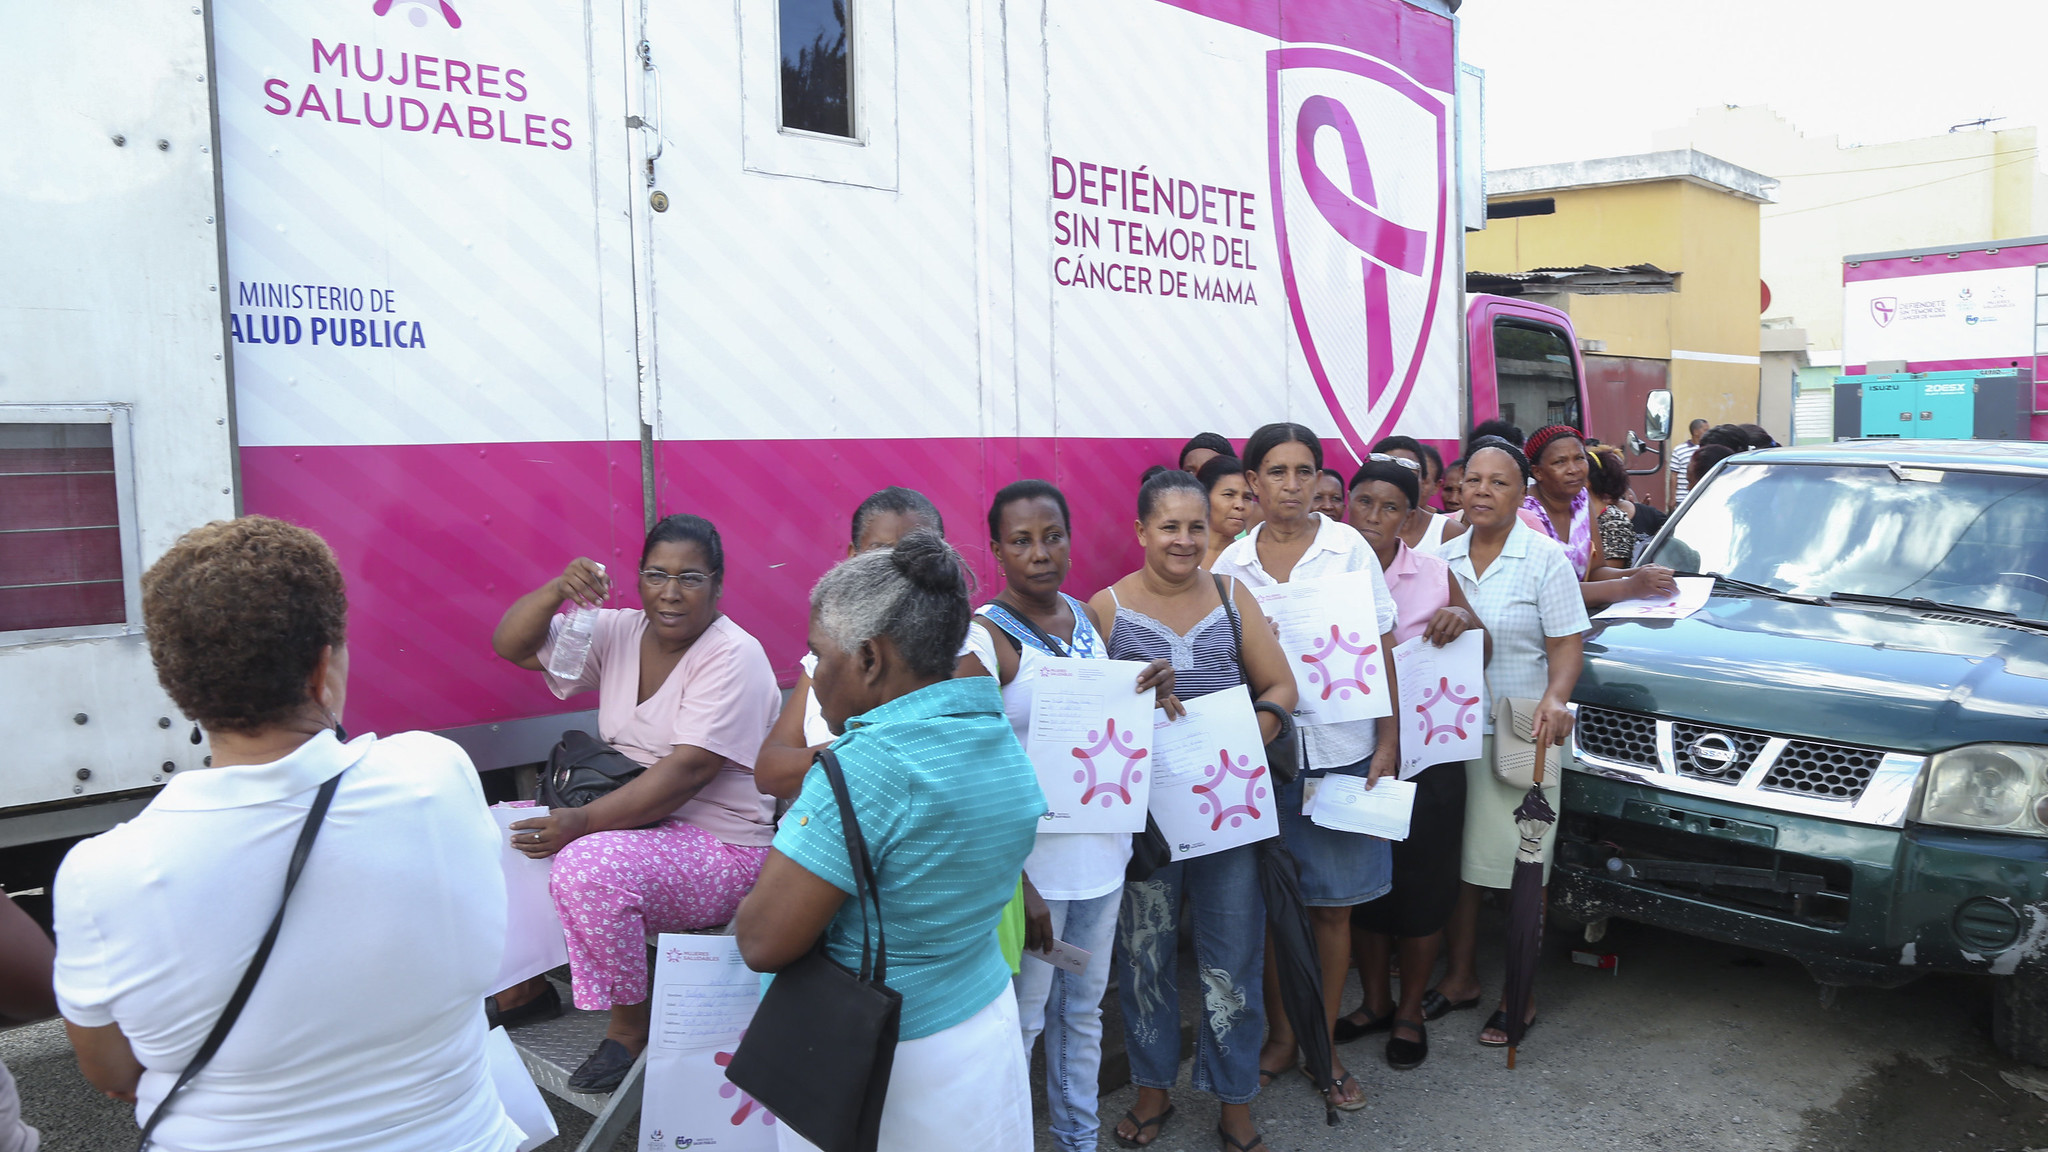 REPÚBLICA DOMINICANA: Mujeres Saludables:  57,369 mamografías realizadas en más de 830 jornadas de prevención de cáncer de mama entre 2013-2019